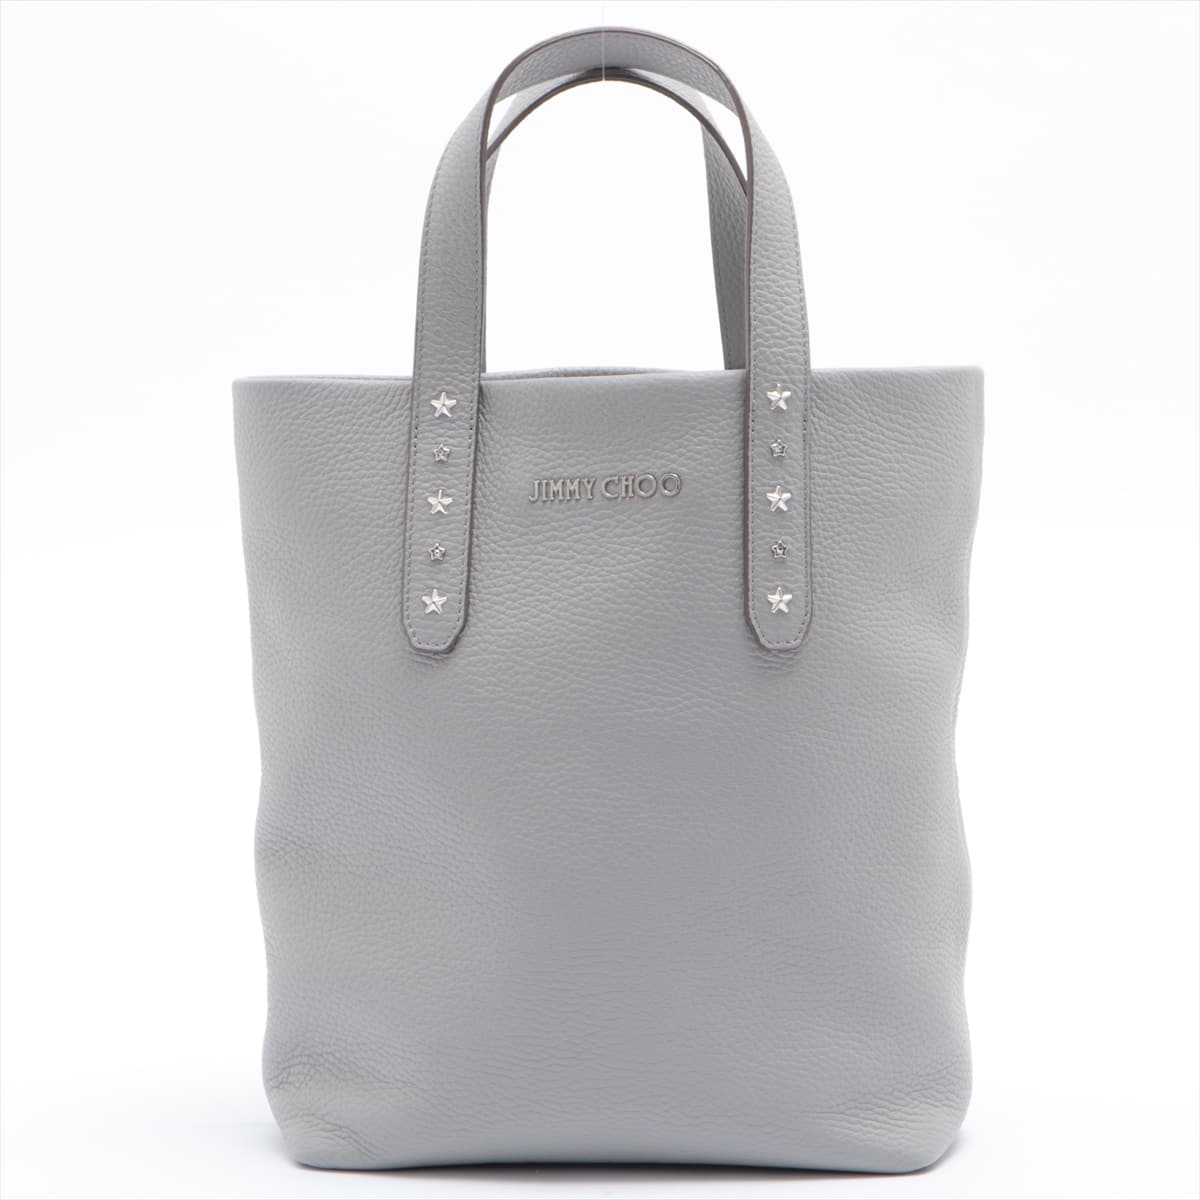 Jimmy Choo Leather 2way handbag Grey